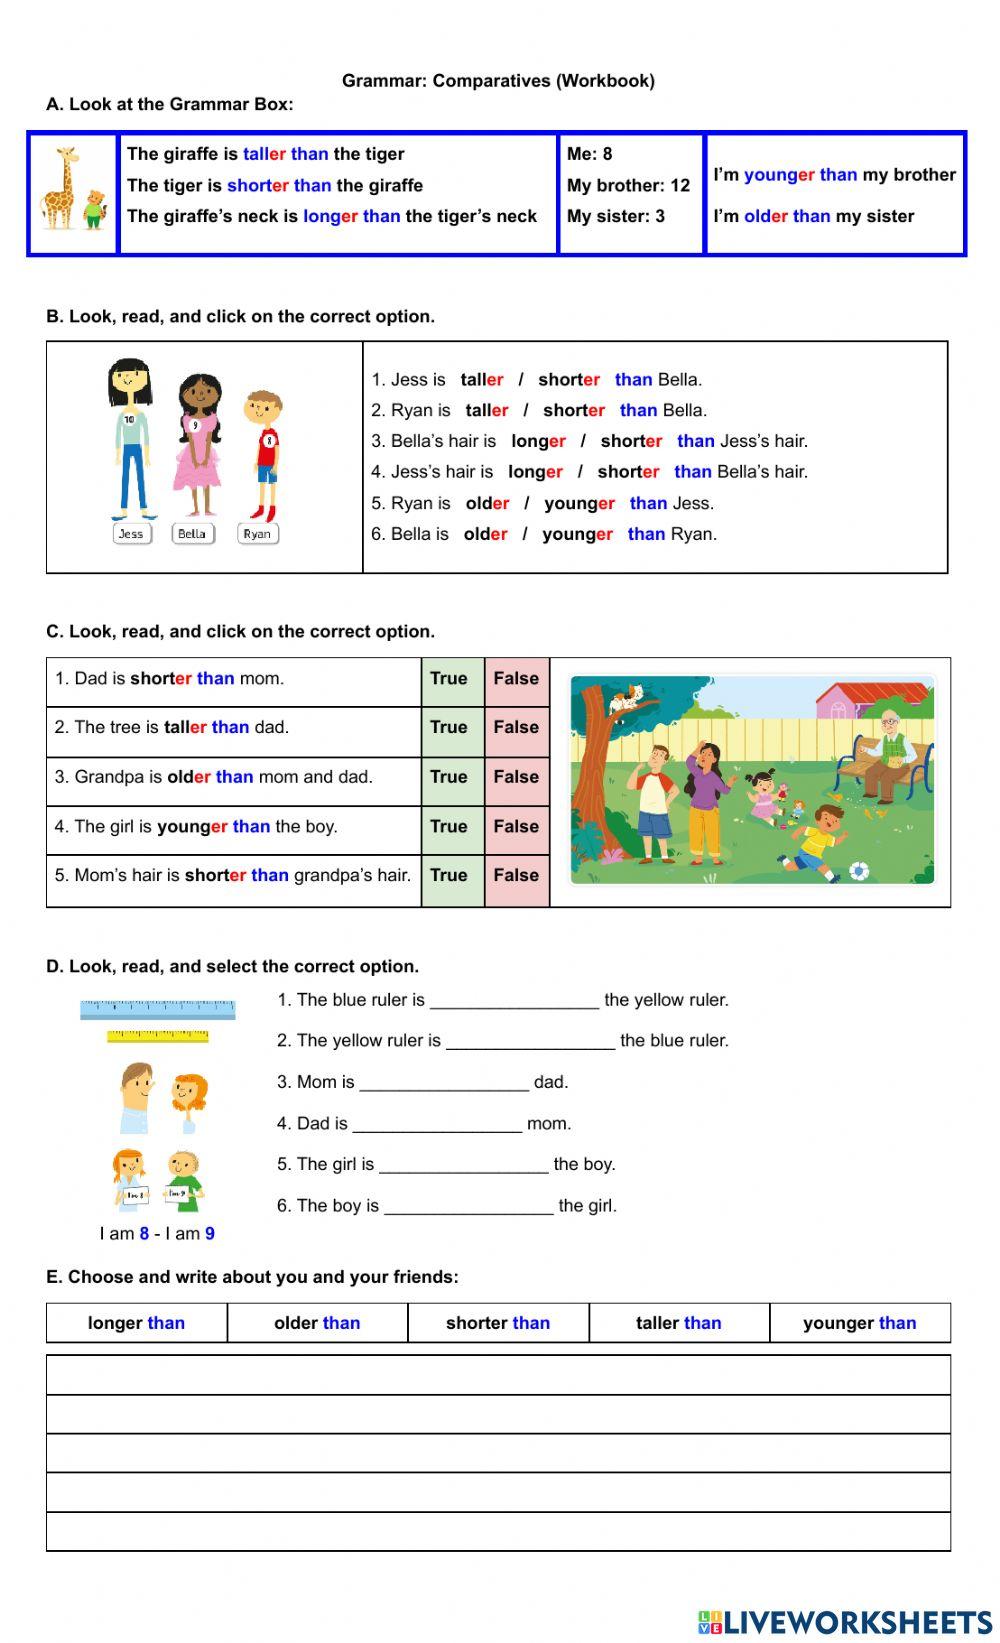 Grammar: Comparatives (Unit 10 Workbook)